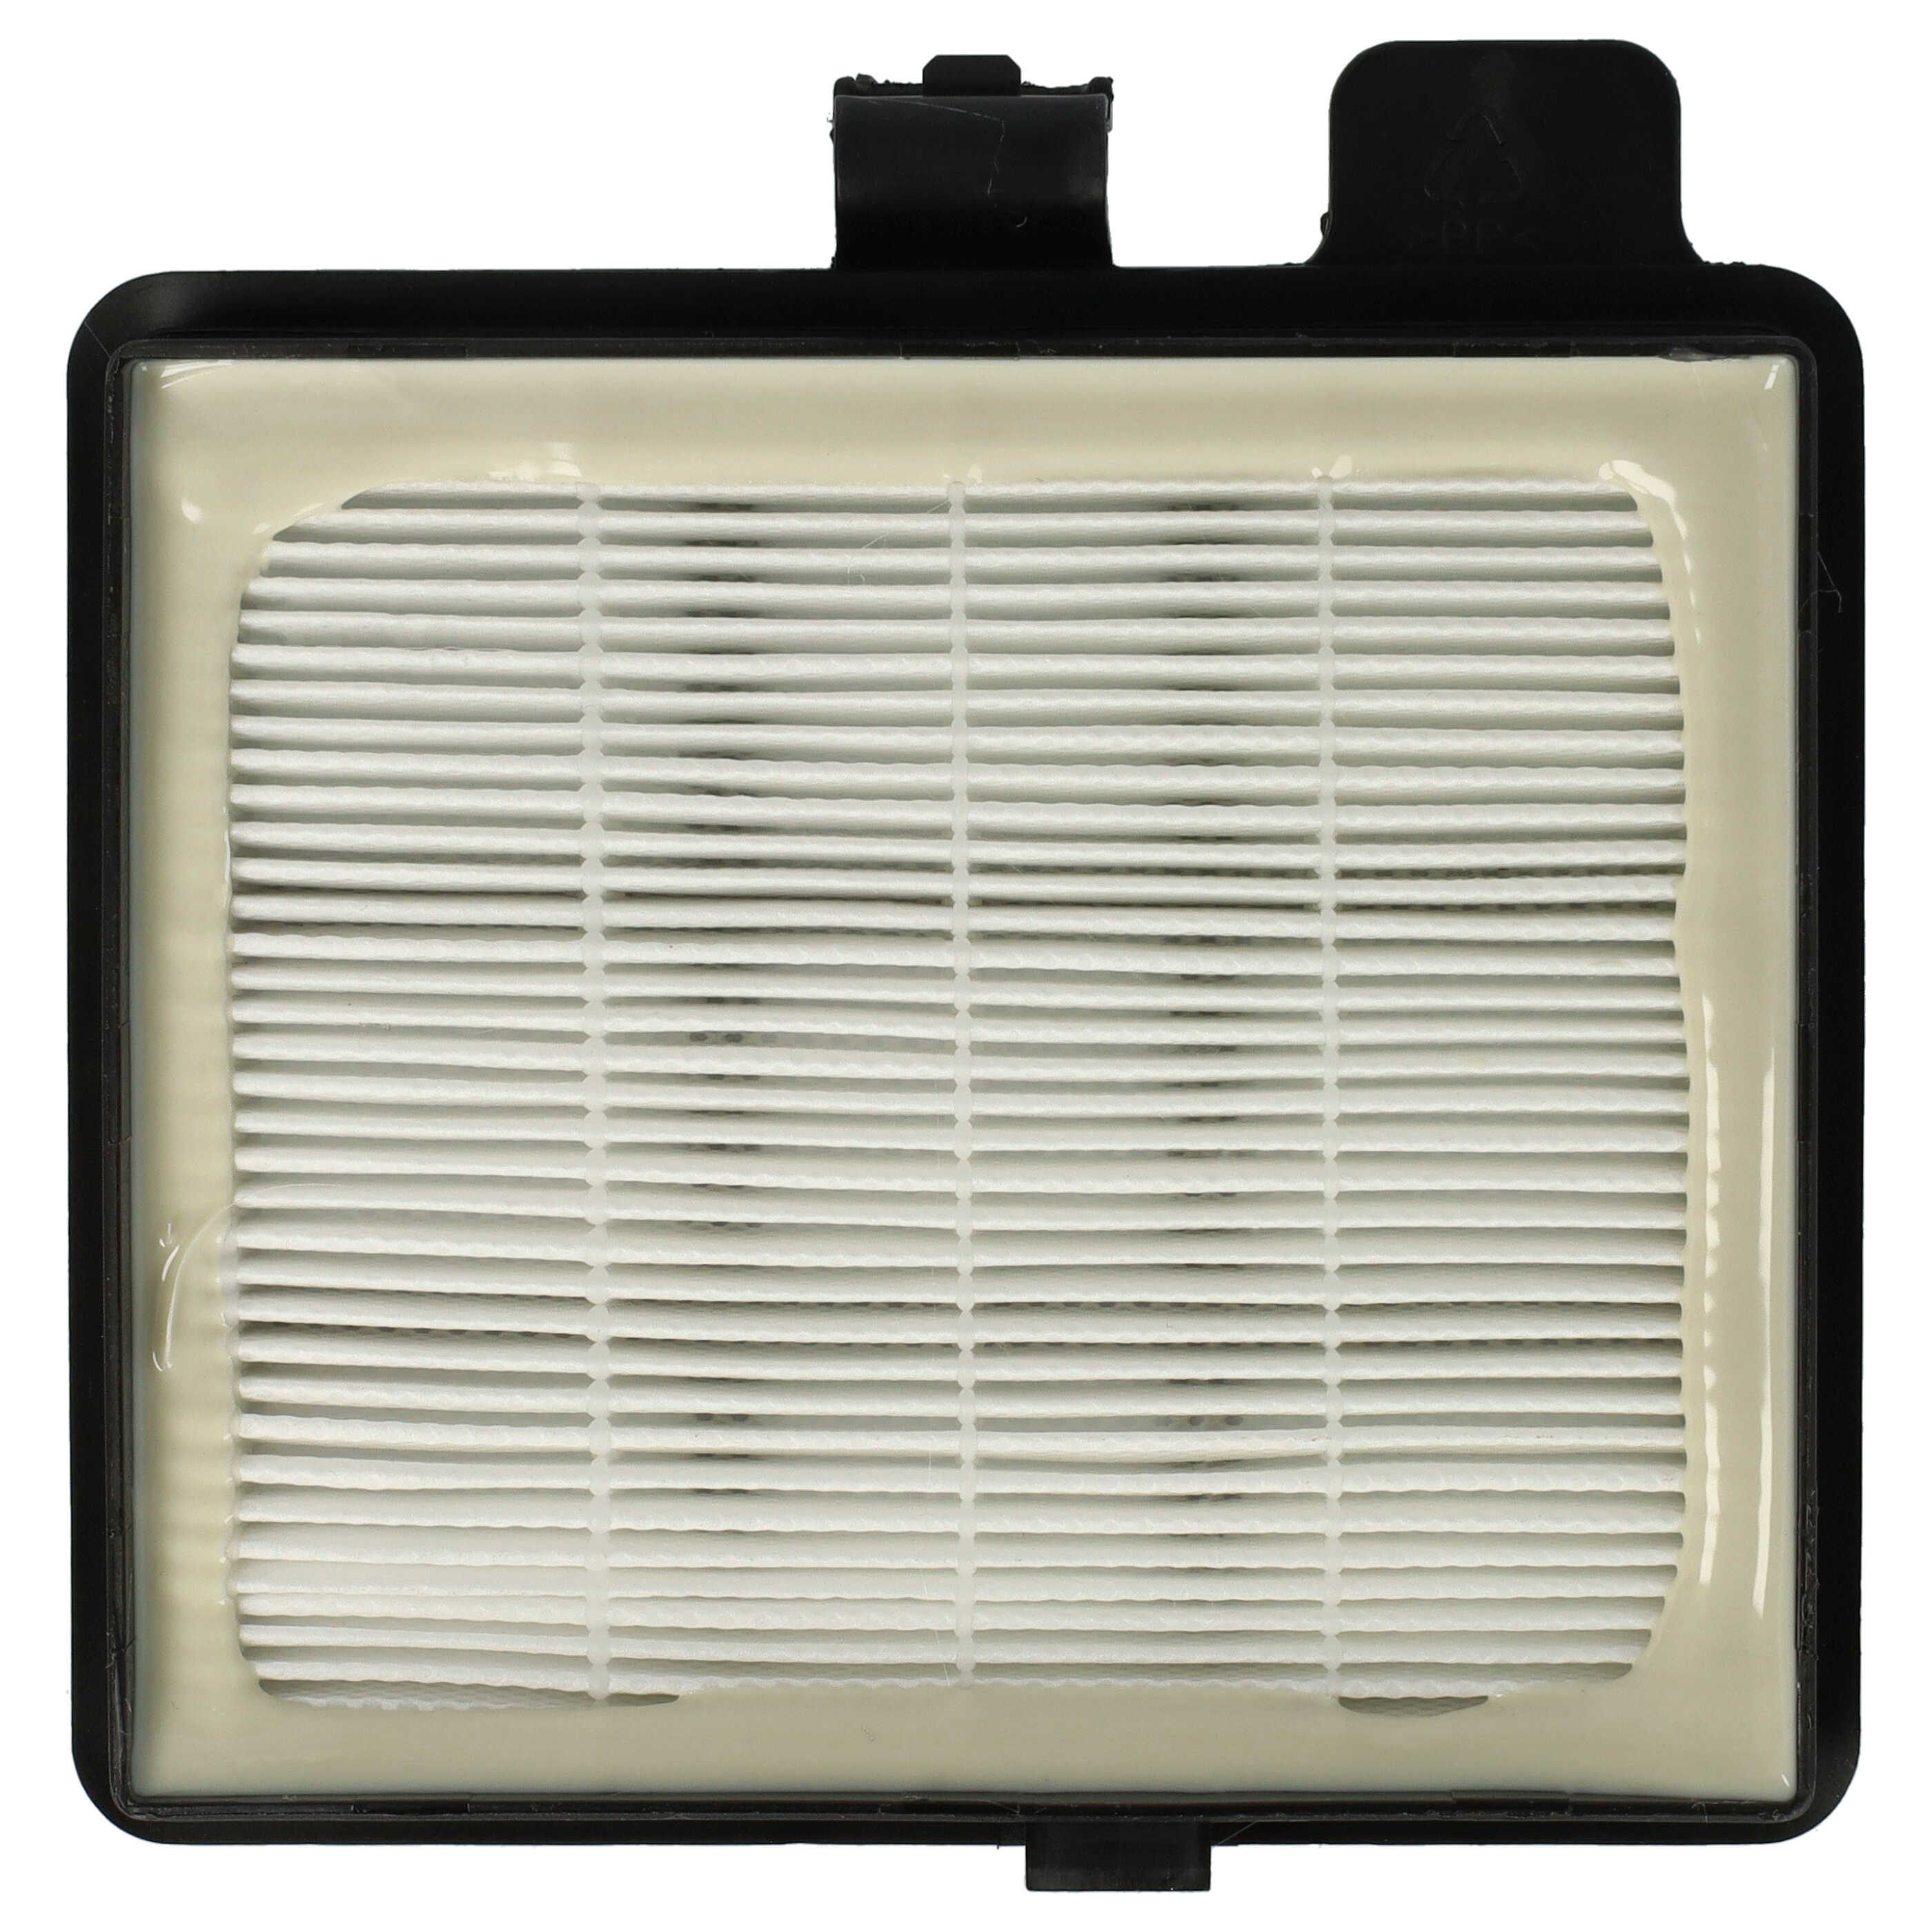 Filtre remplace Ariete AT5185394210, 00P274100AR0, 00P274110AR0 pour aspirateur - filtre HEPA